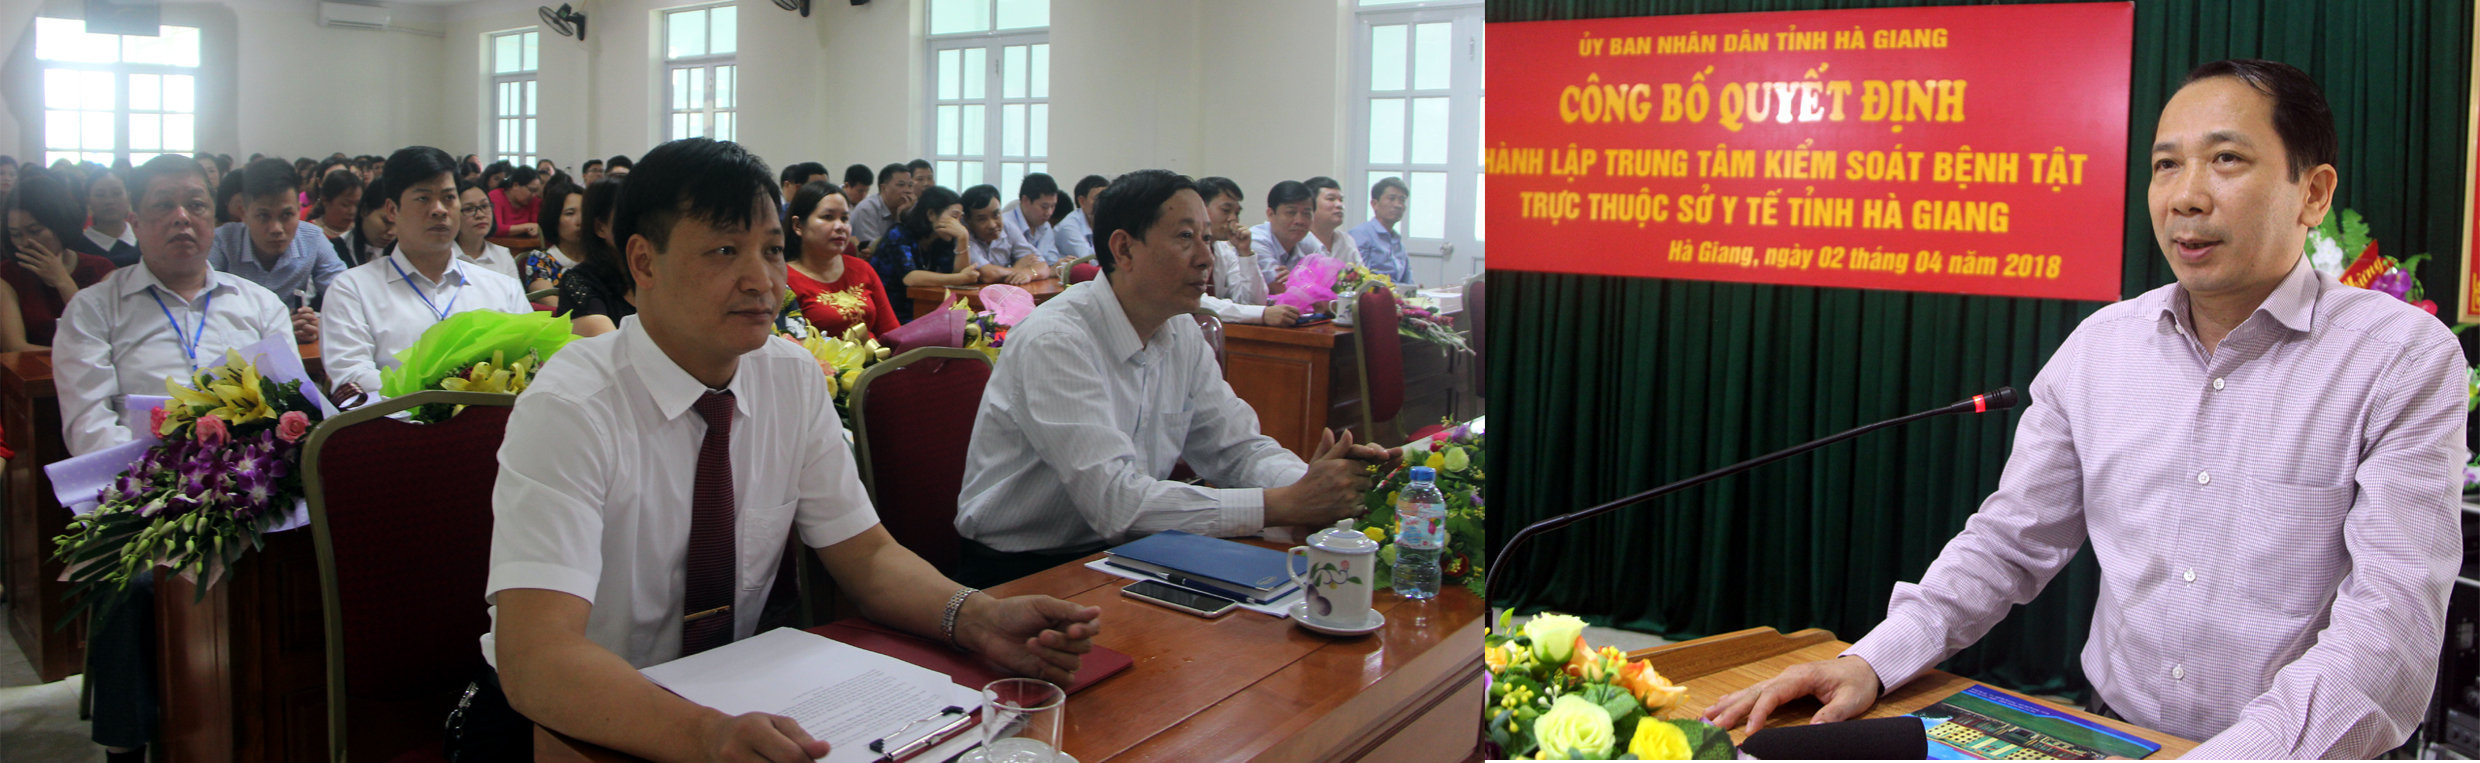 Đ/c Trần Đức Quý, Ủy viên BCH tỉnh ủy, Phó Chủ tịch UBND tỉnh phát biểu giao nhiệm vụ cho Trung tâm Kiểm soát bệnh tật tỉnh